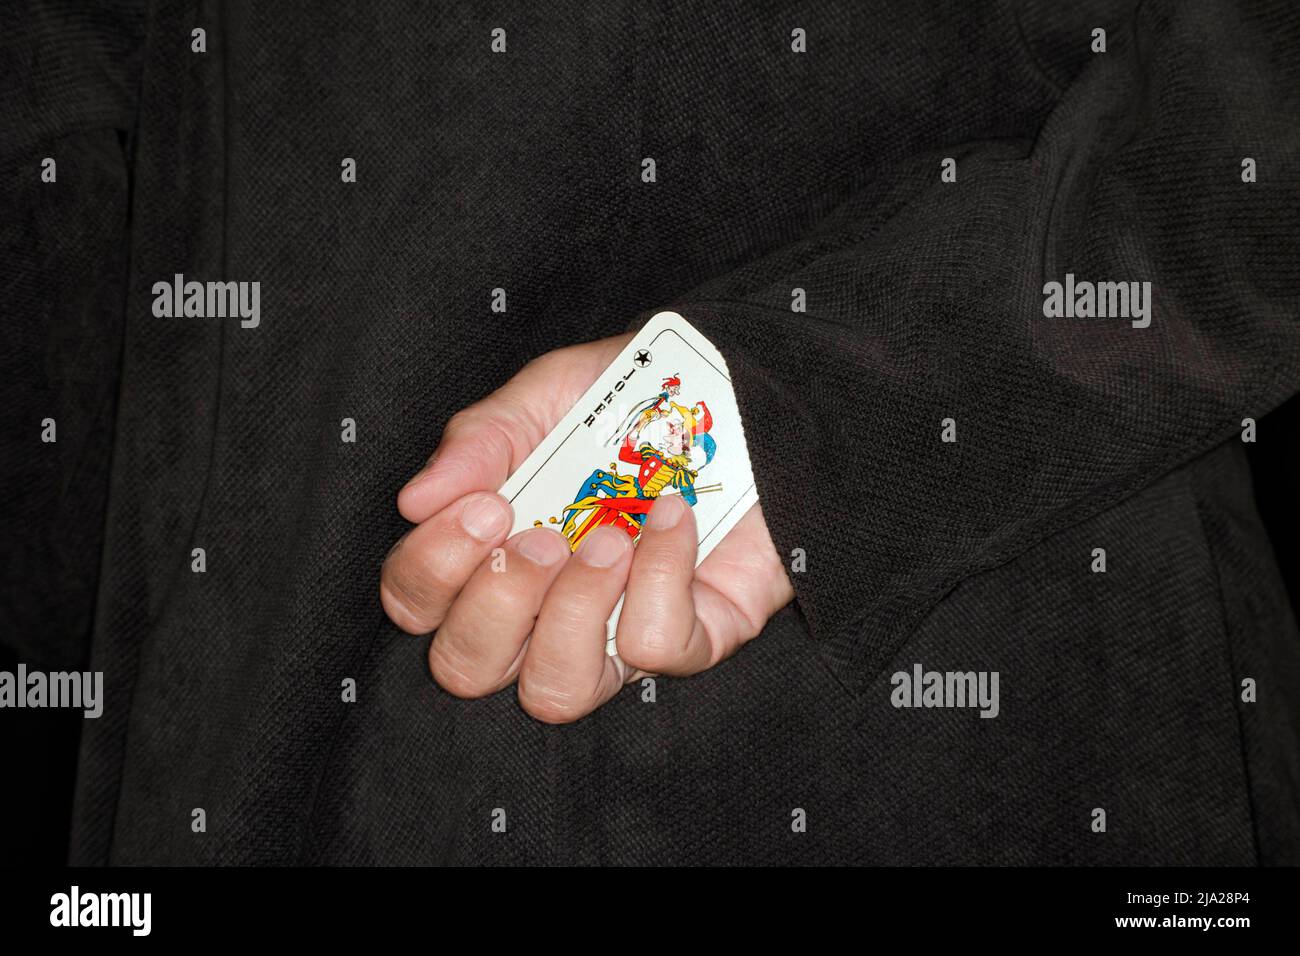 Spielkarte, Betrug, Symbol-Betrug, Symbol-Bild für einen weiteren Joker auf dem Ärmel Stockfoto